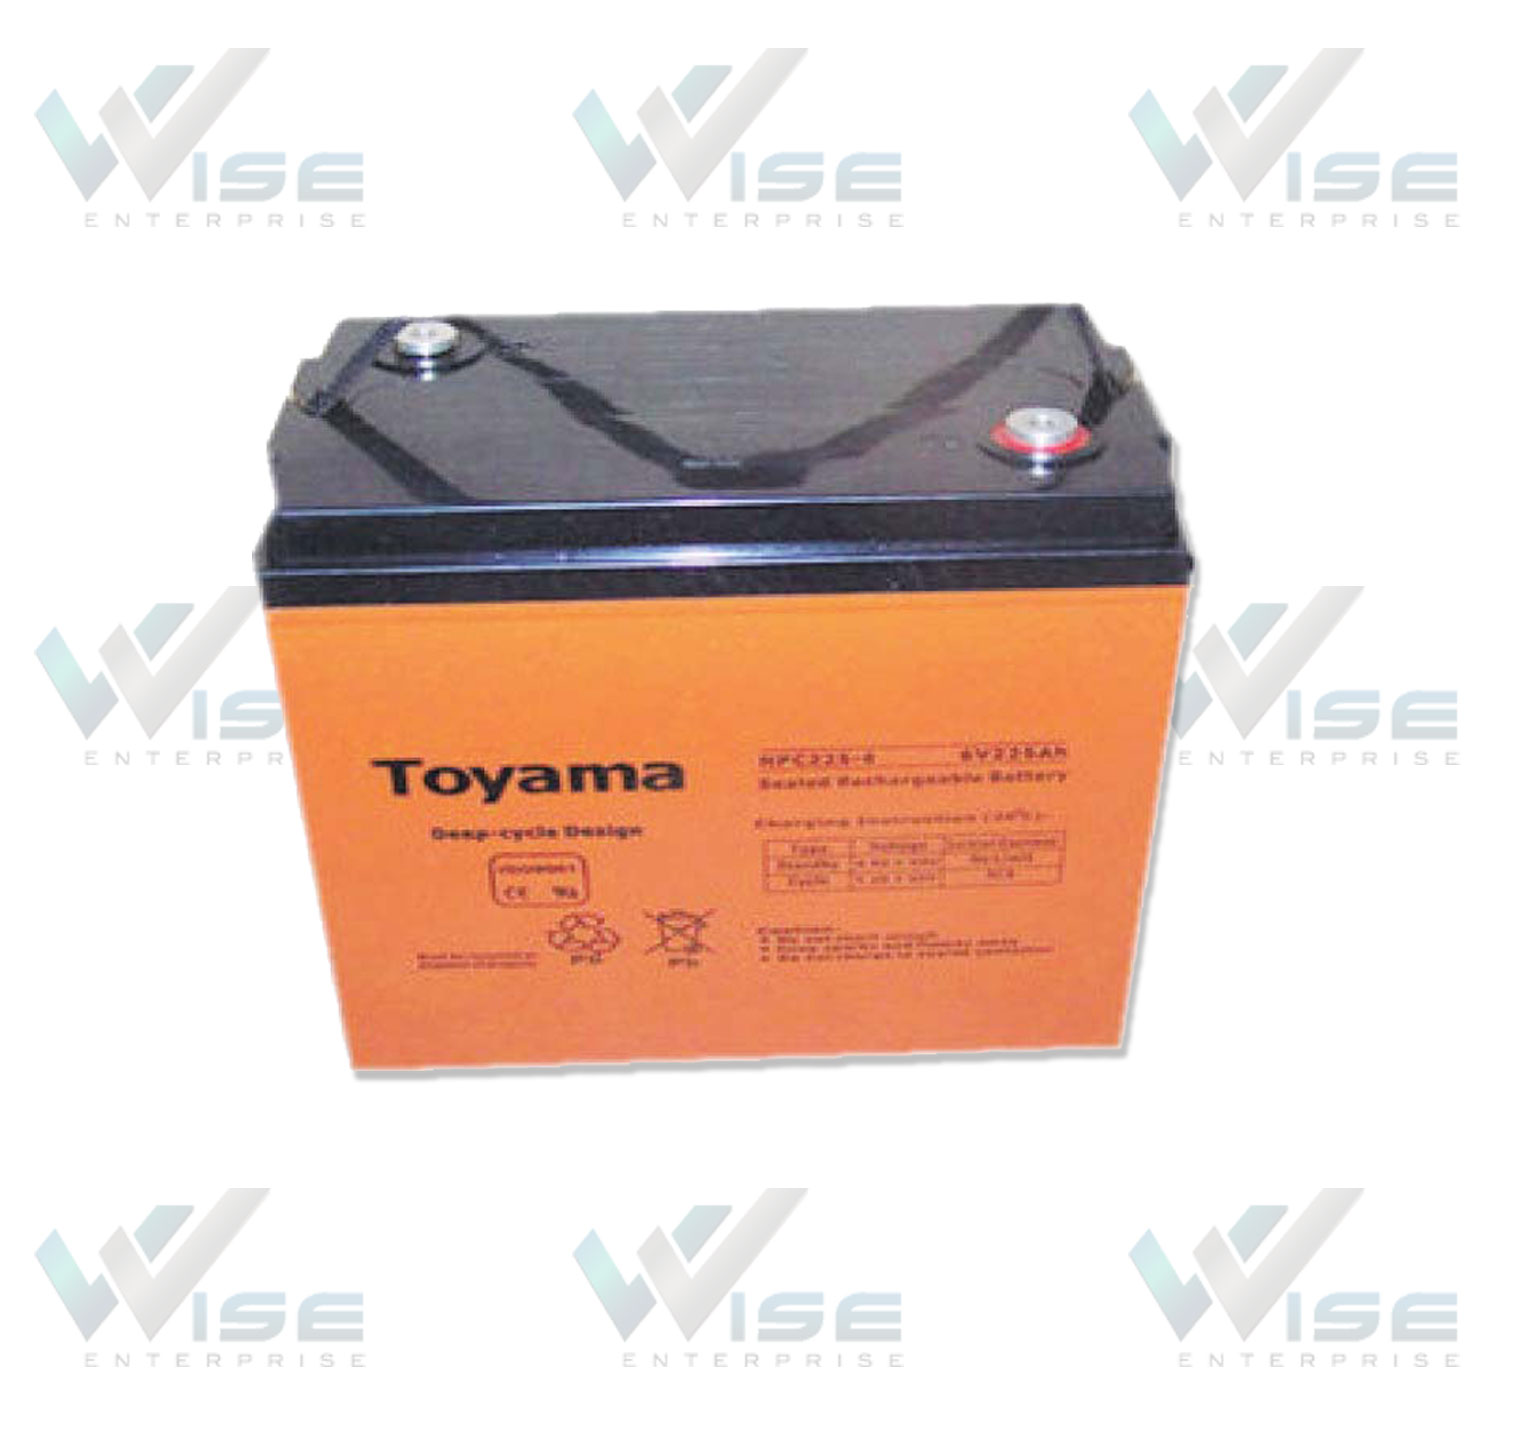 แบตเตอรี่รถทำความสะอาด แบตเตอรี่รถกอล์ฟ Deep Cycle Batteries แบตเตอรี่โทยาม่า Toyama Battery